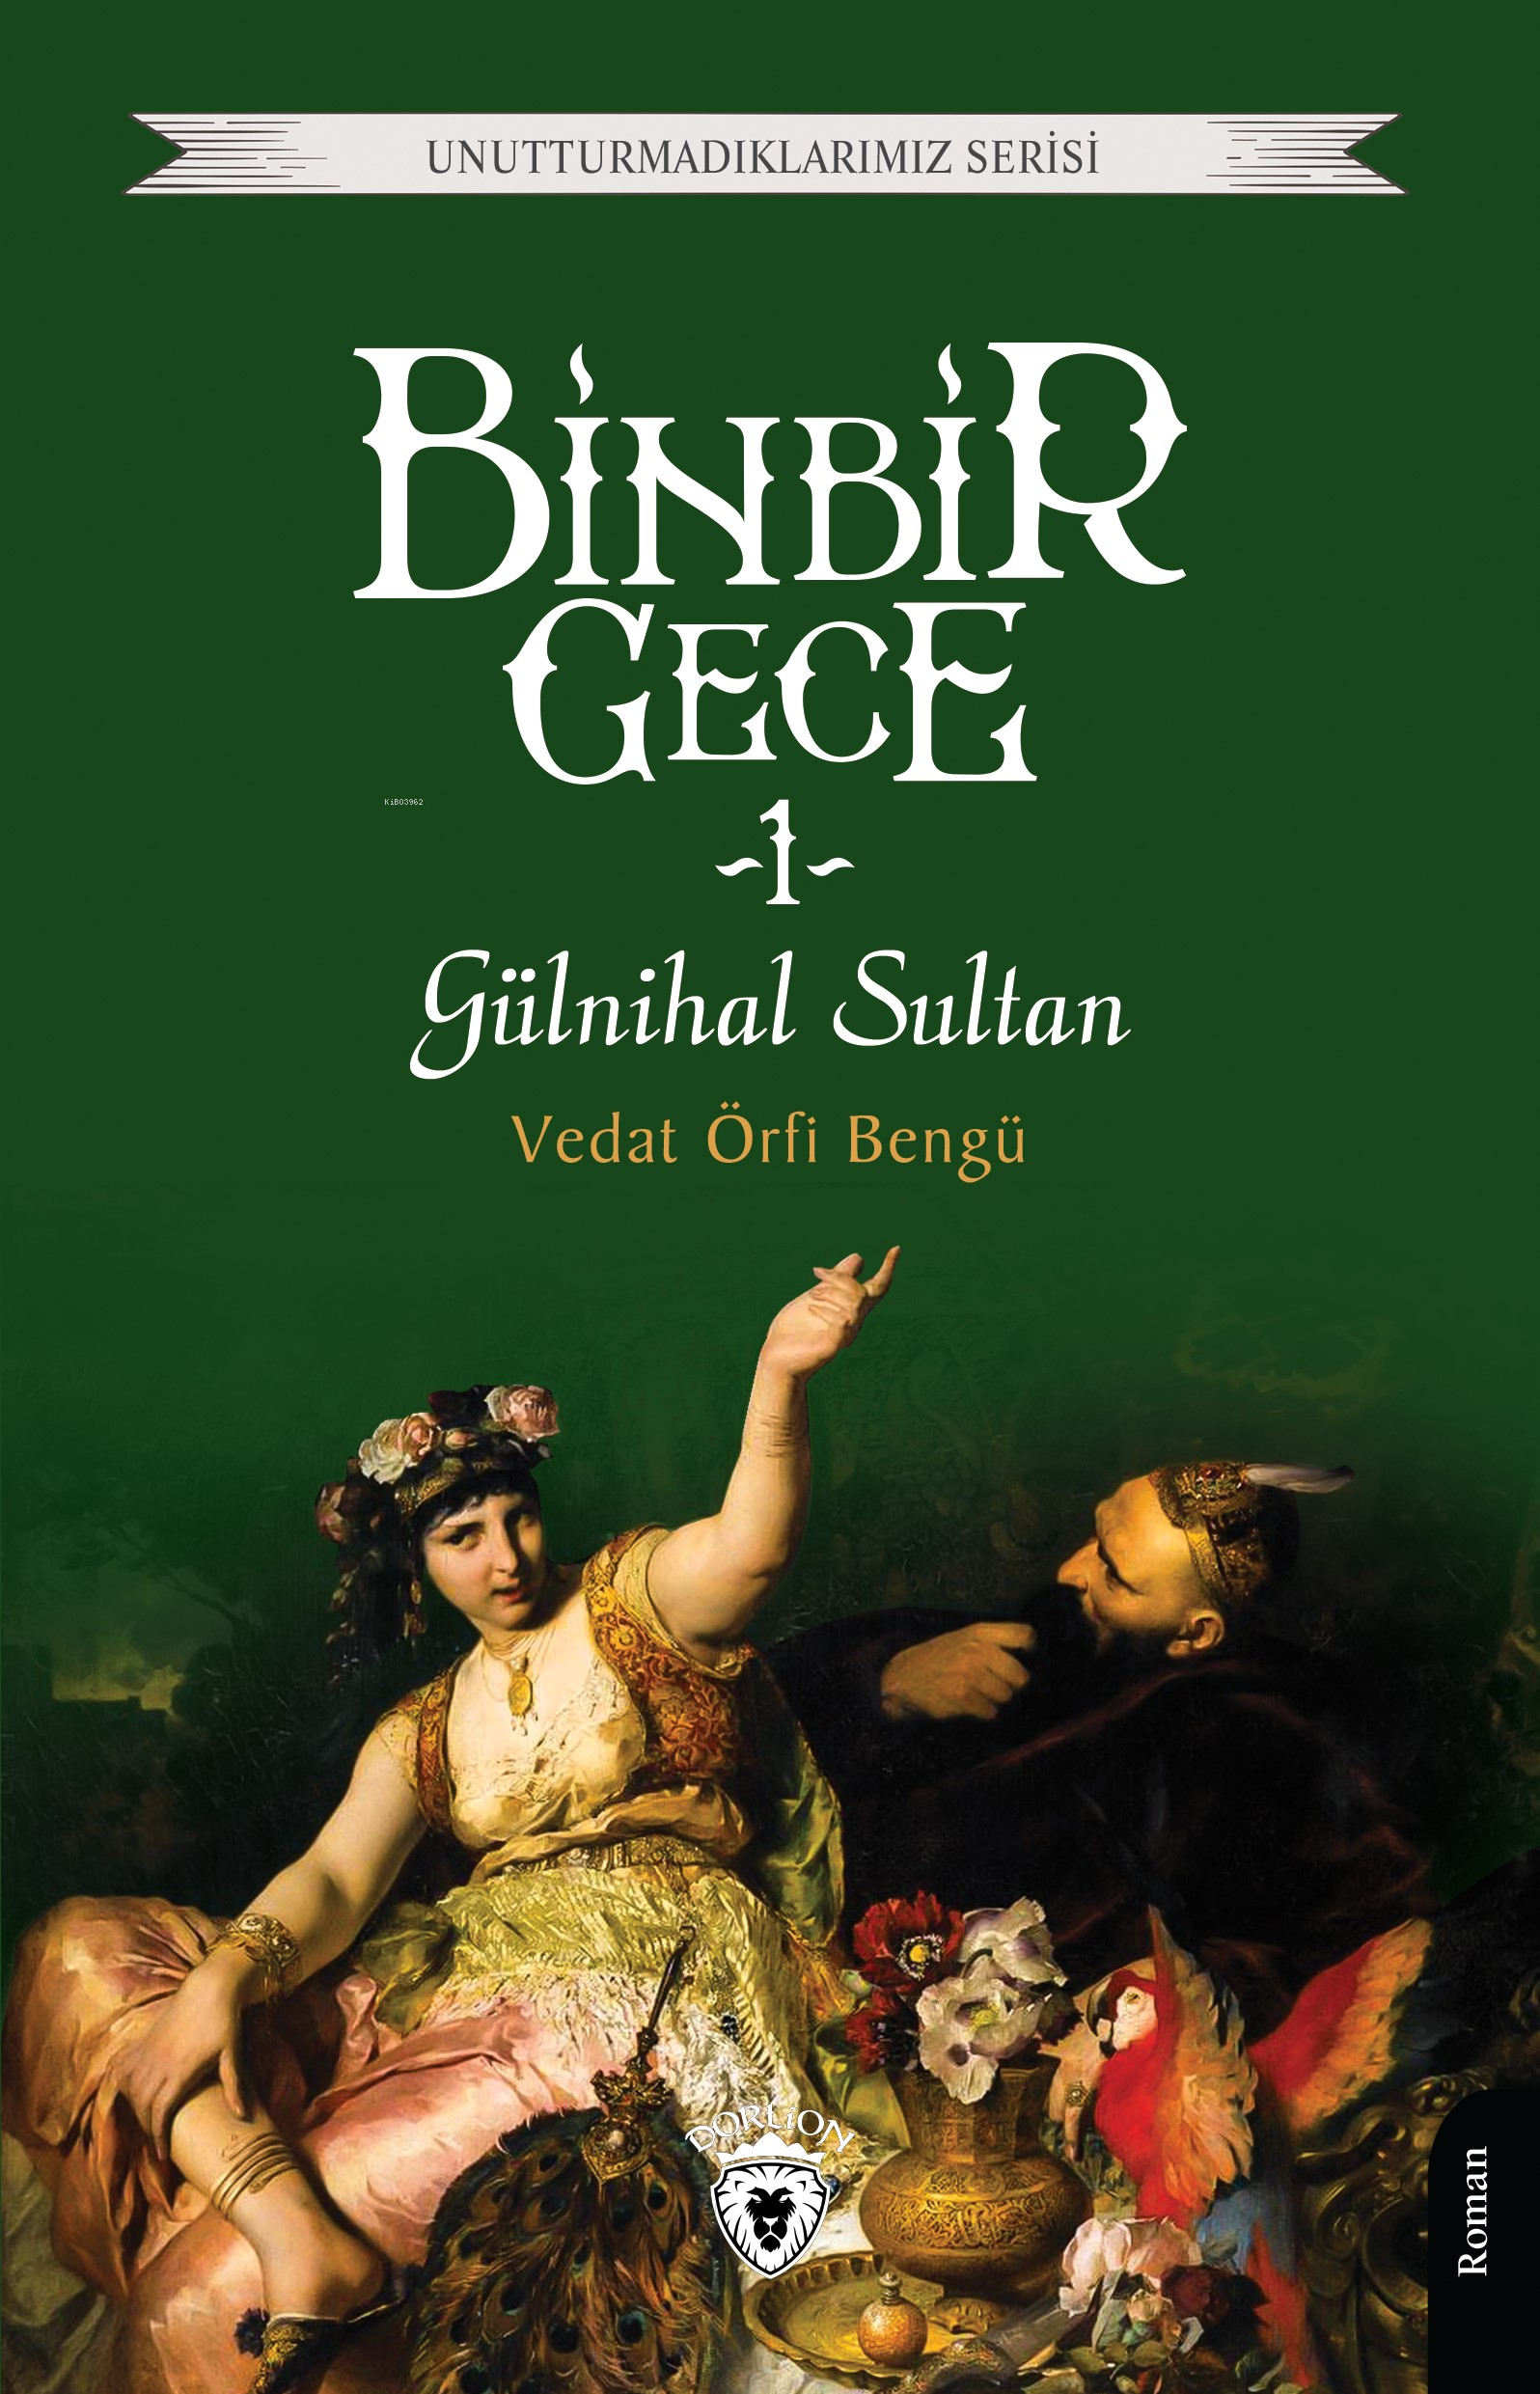 Binbir Gece Gülnihal Sultan -1-;Unutturmadıklarımız Serisi